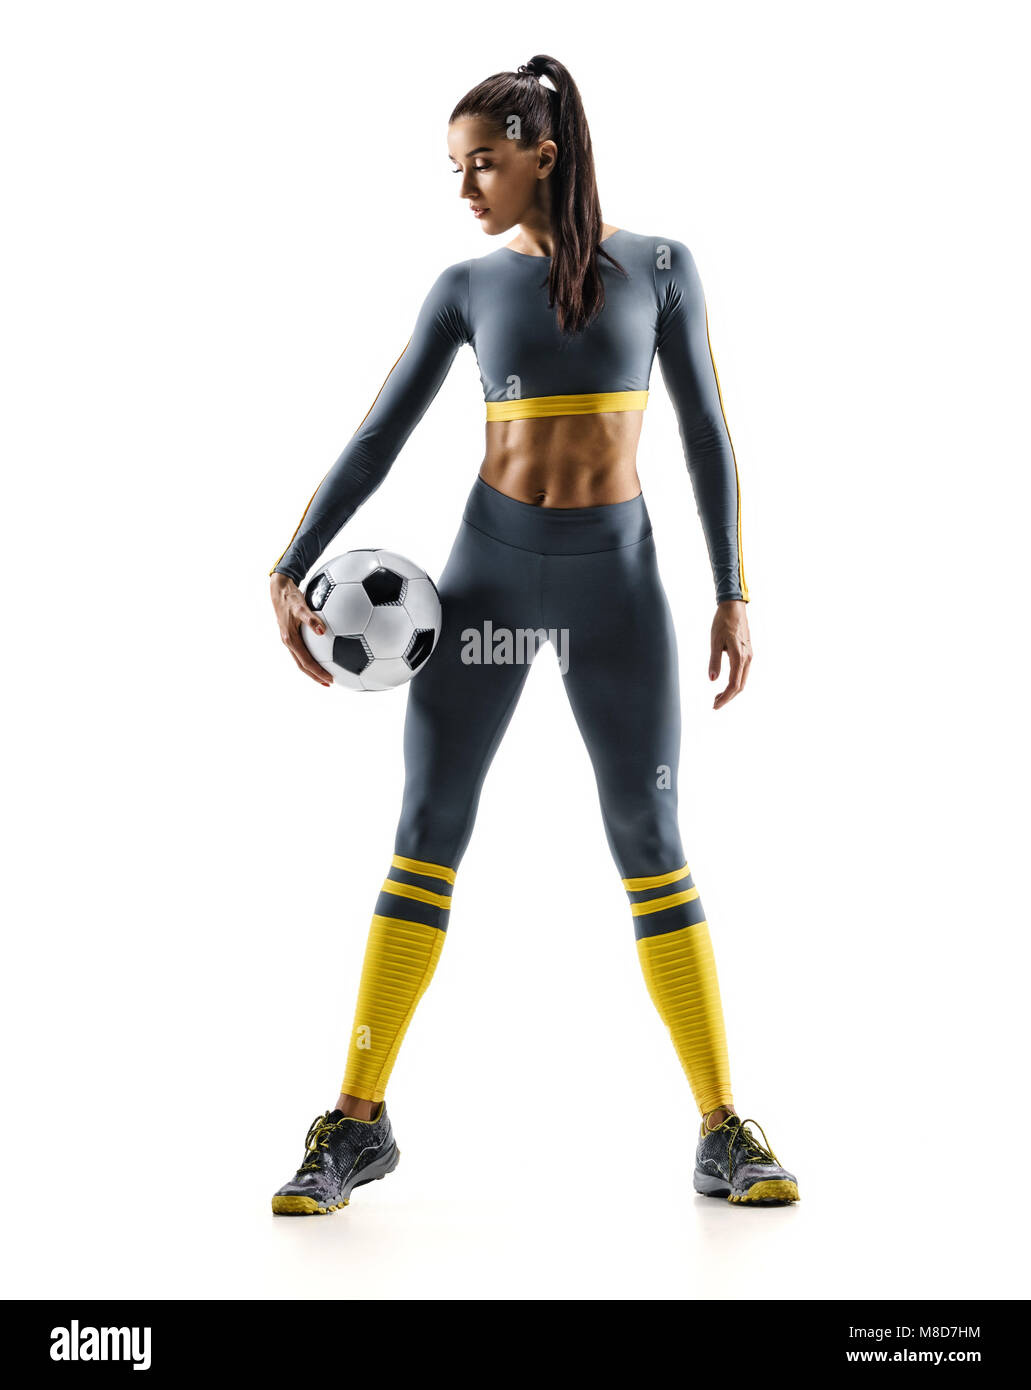 Prêt à jouer. Joueur de foot woman standing in silhouette isolé sur fond blanc. Sport et mode de vie sain Banque D'Images